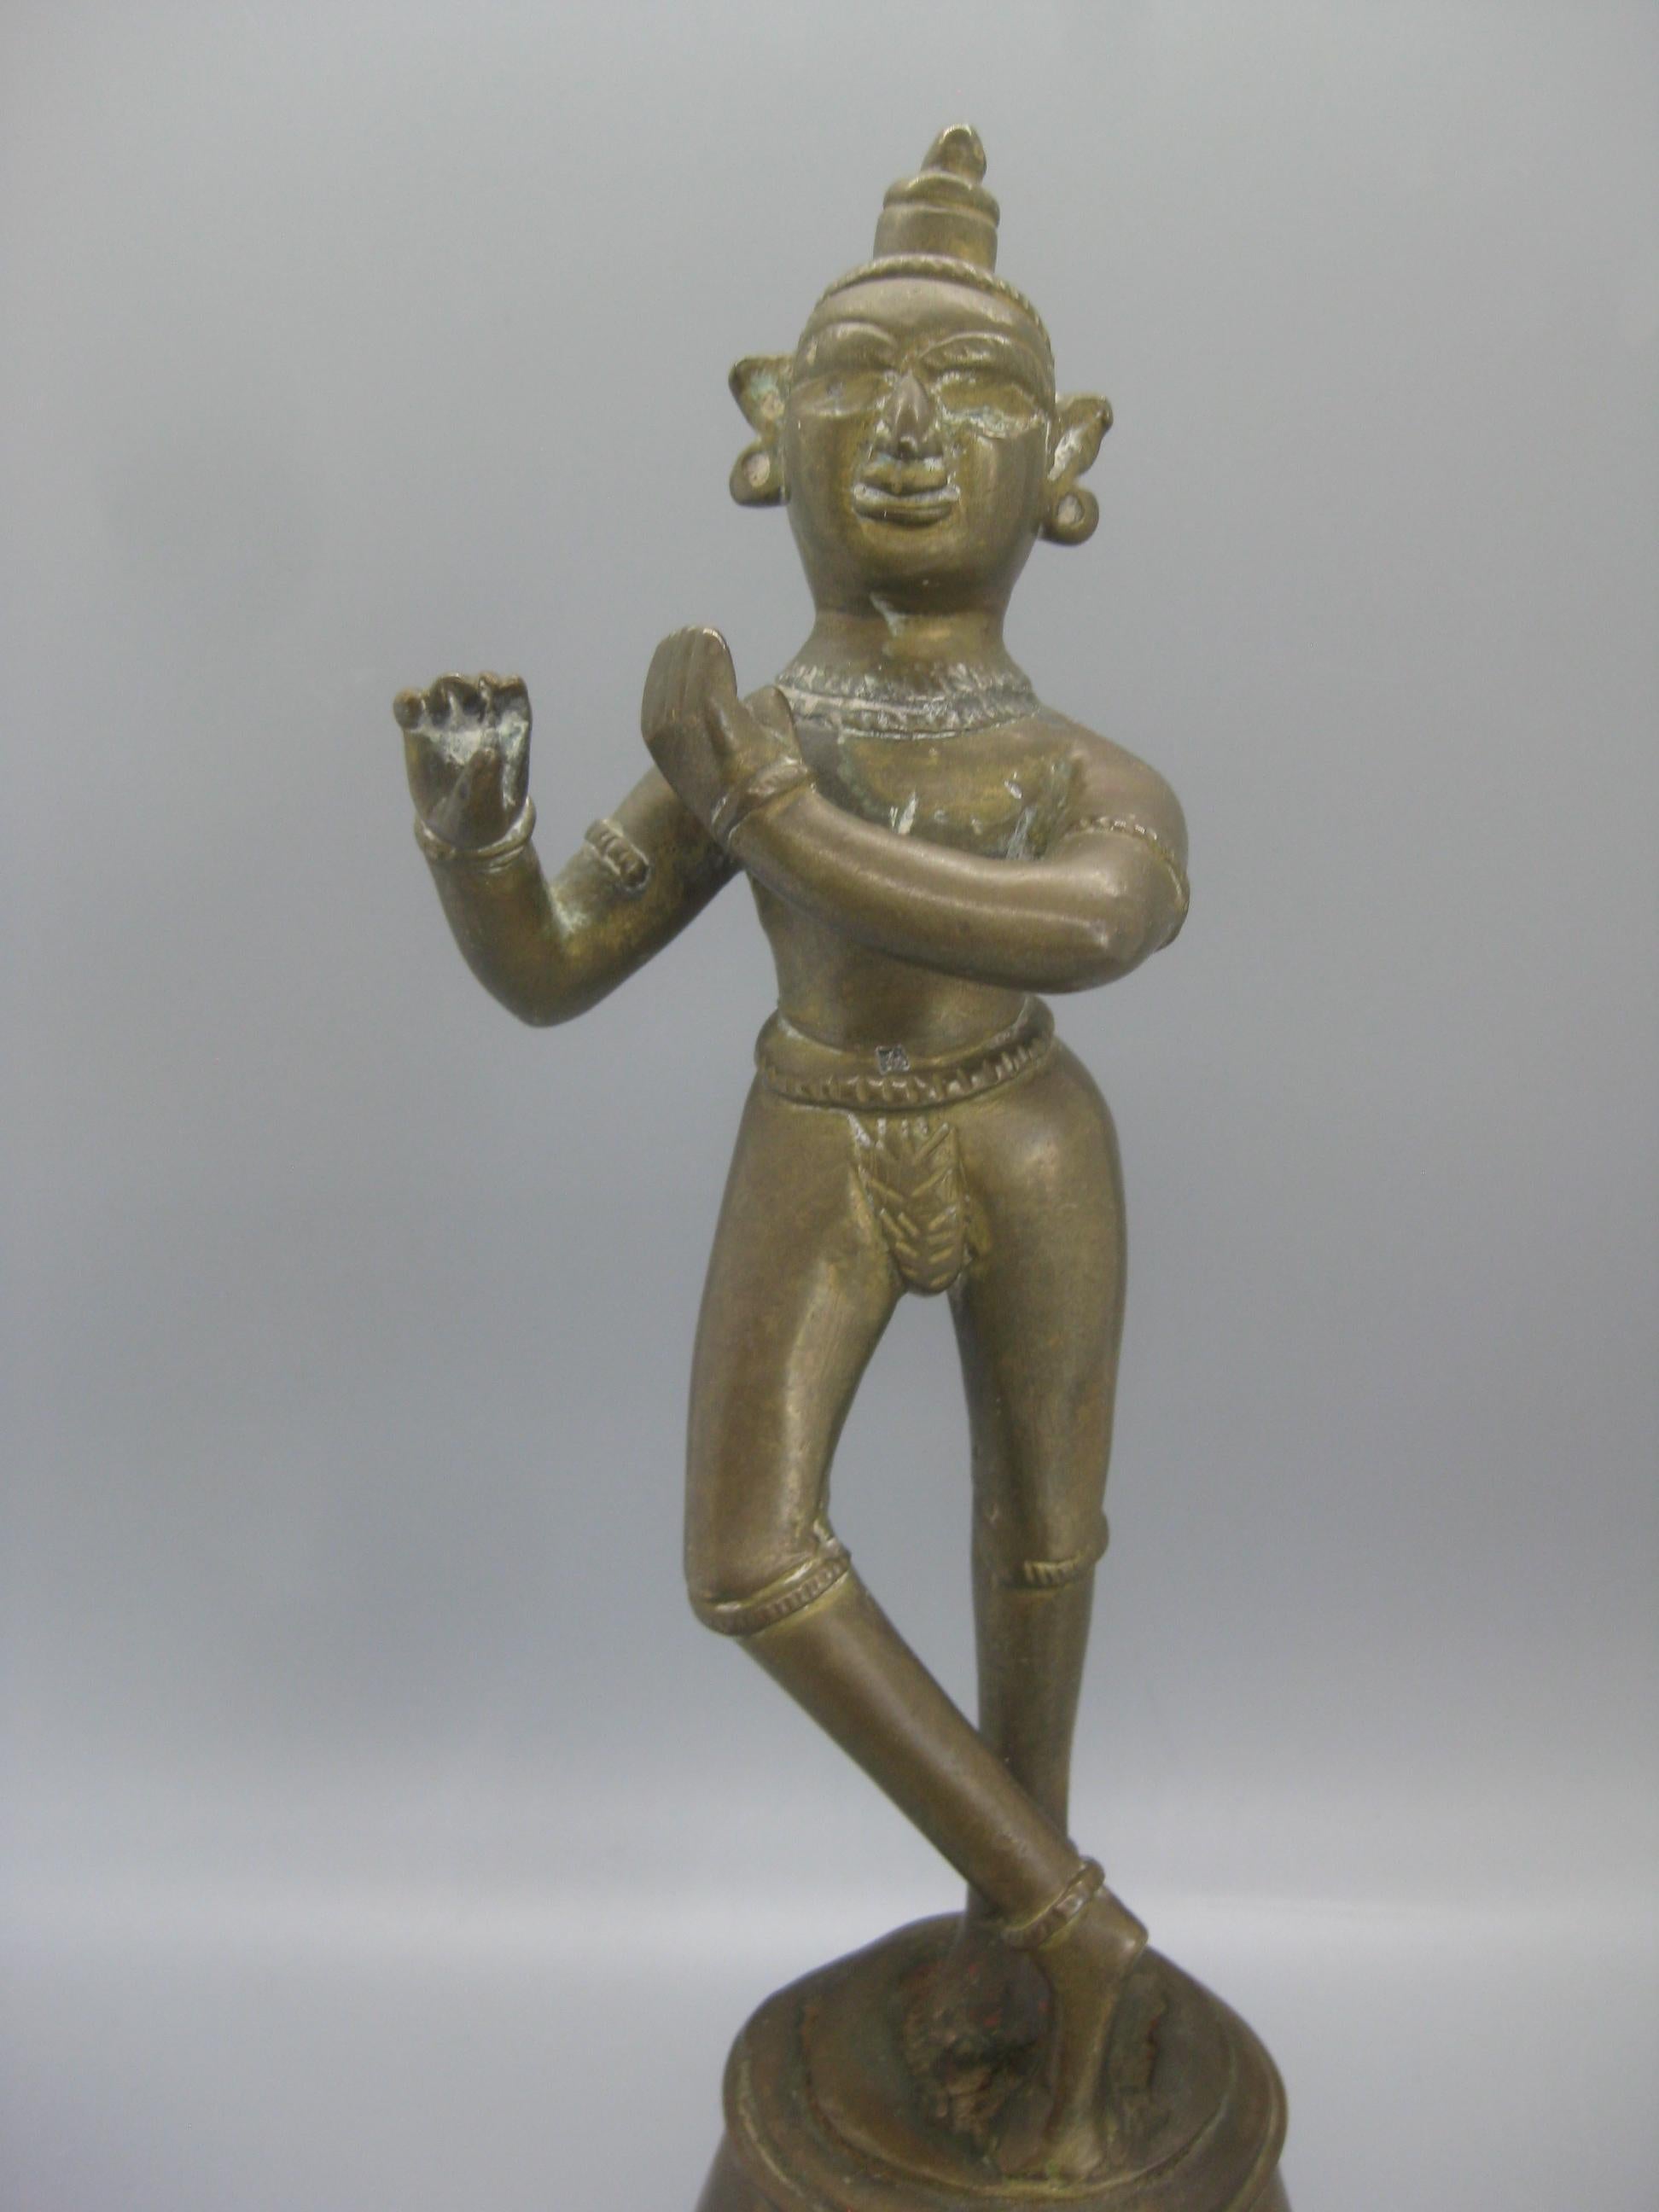 Très unique sculpture ancienne de la statue hindoue Lord Krishna debout. Fabriqué en laiton et doté d'une magnifique patine. C'est une pièce très ancienne. En très bon état d'origine, sans aucun dommage. Mesures : environ 9 3/4